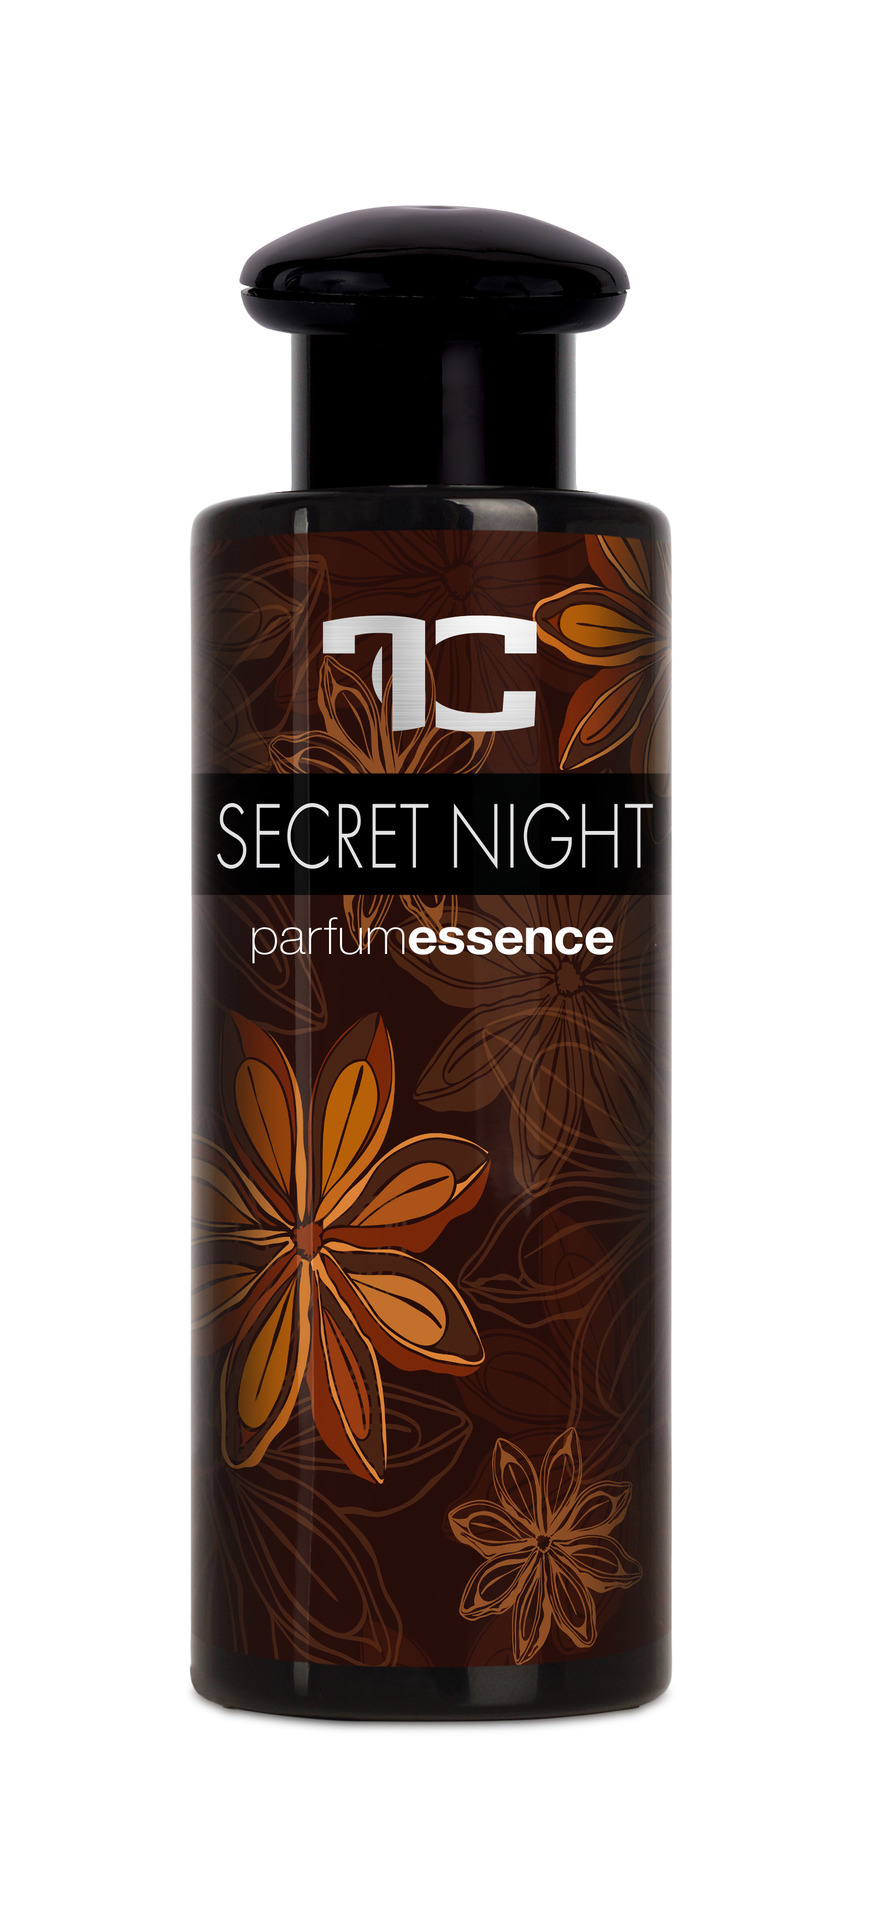 Parfémová esence SECRET NIGHT do aromalamp a difuzérů